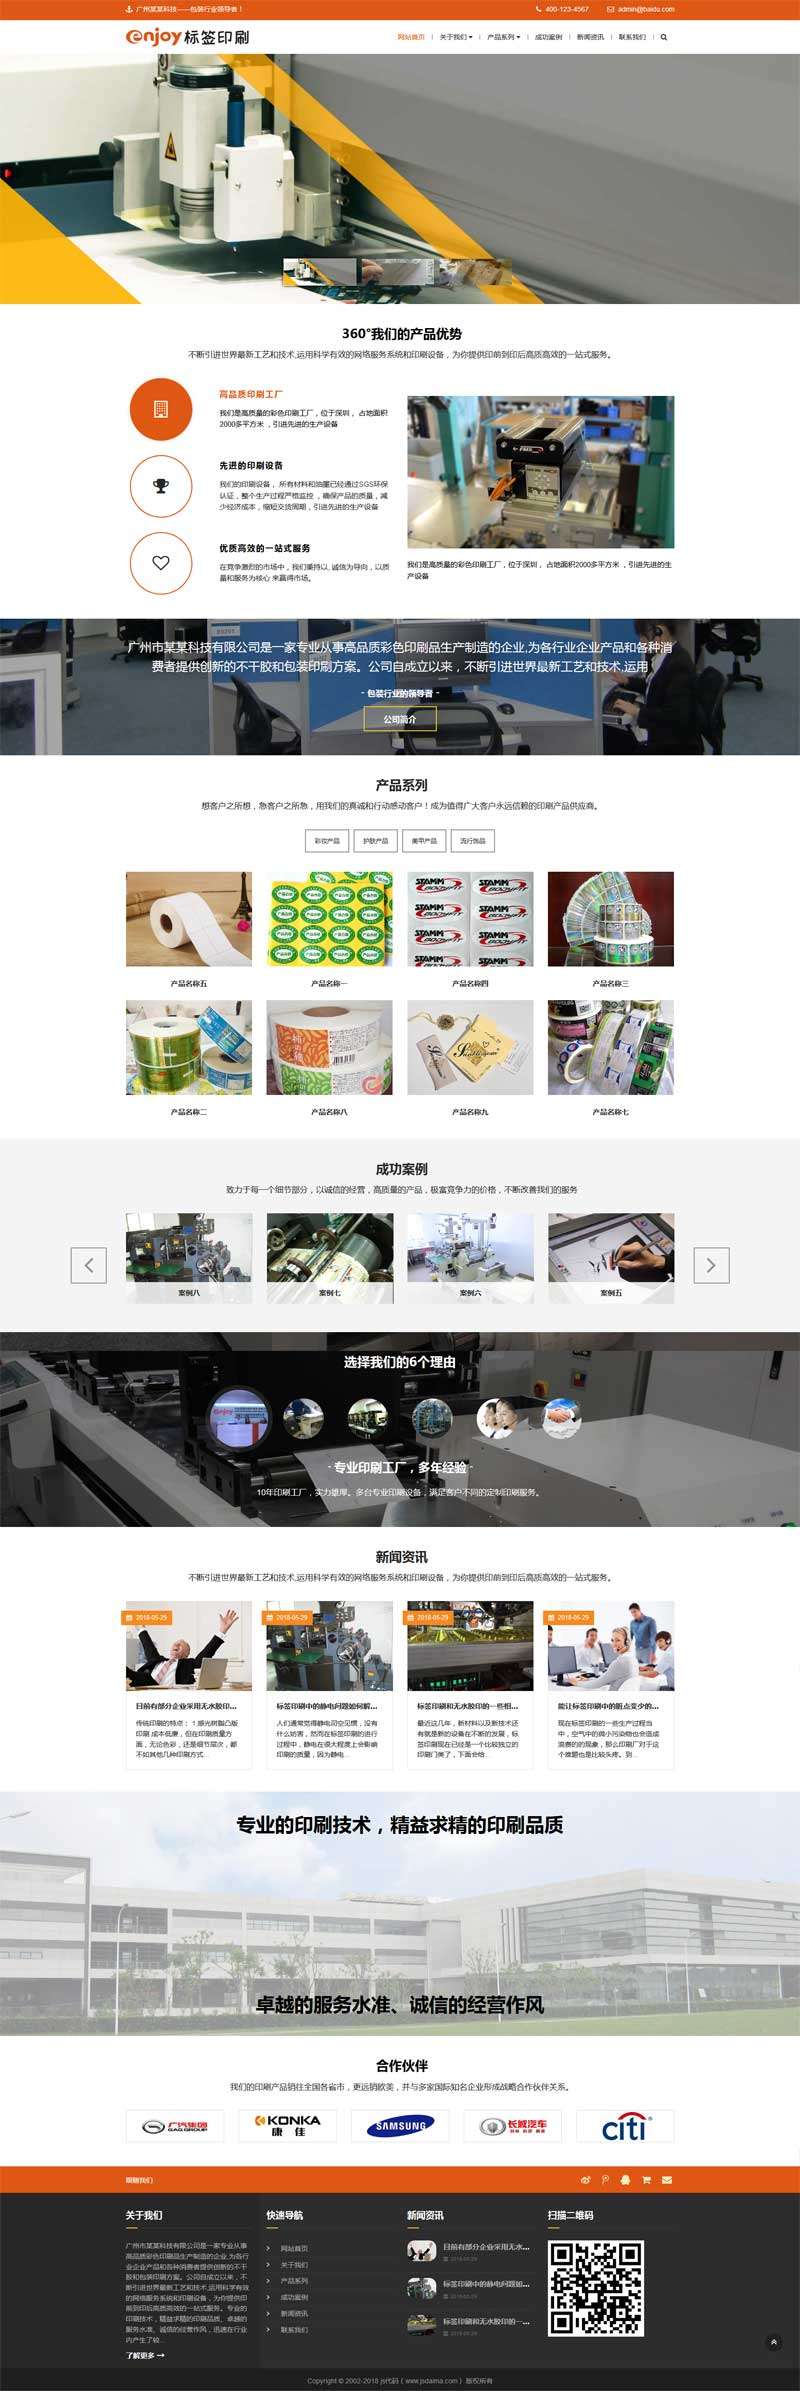 响应式的包装印刷生产企业网站织梦模板